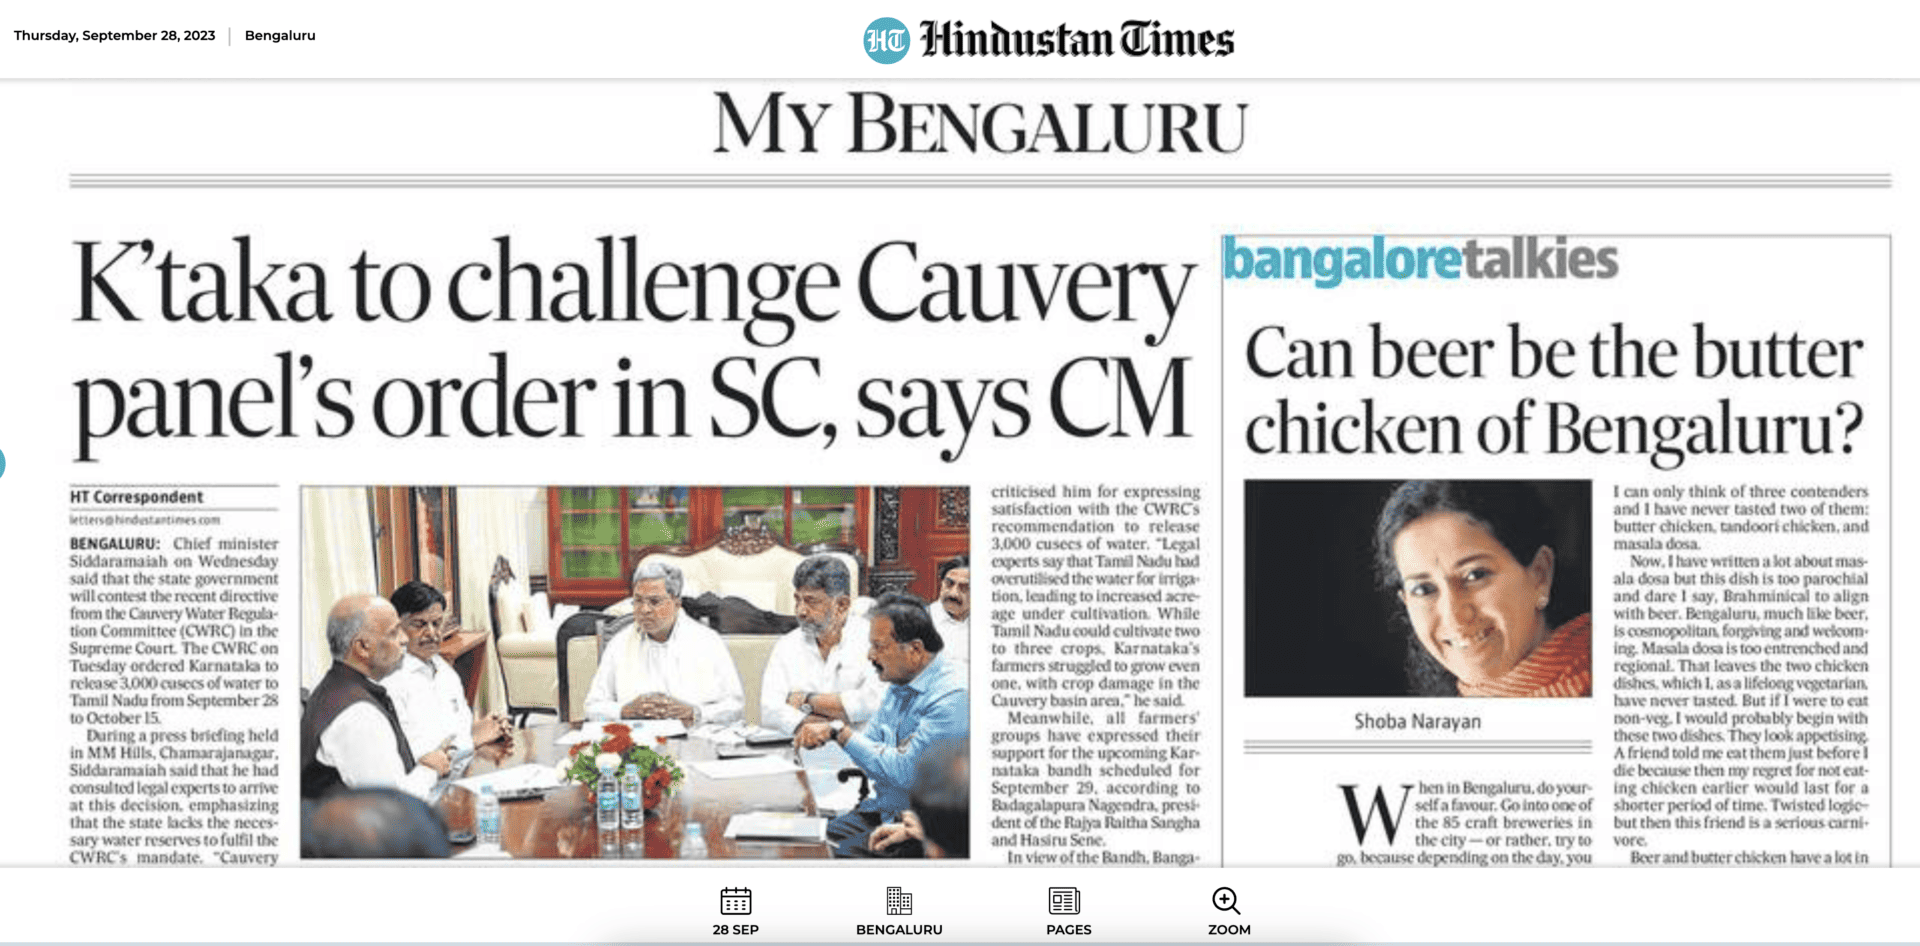 Is beer the butter chicken of Bengaluru?